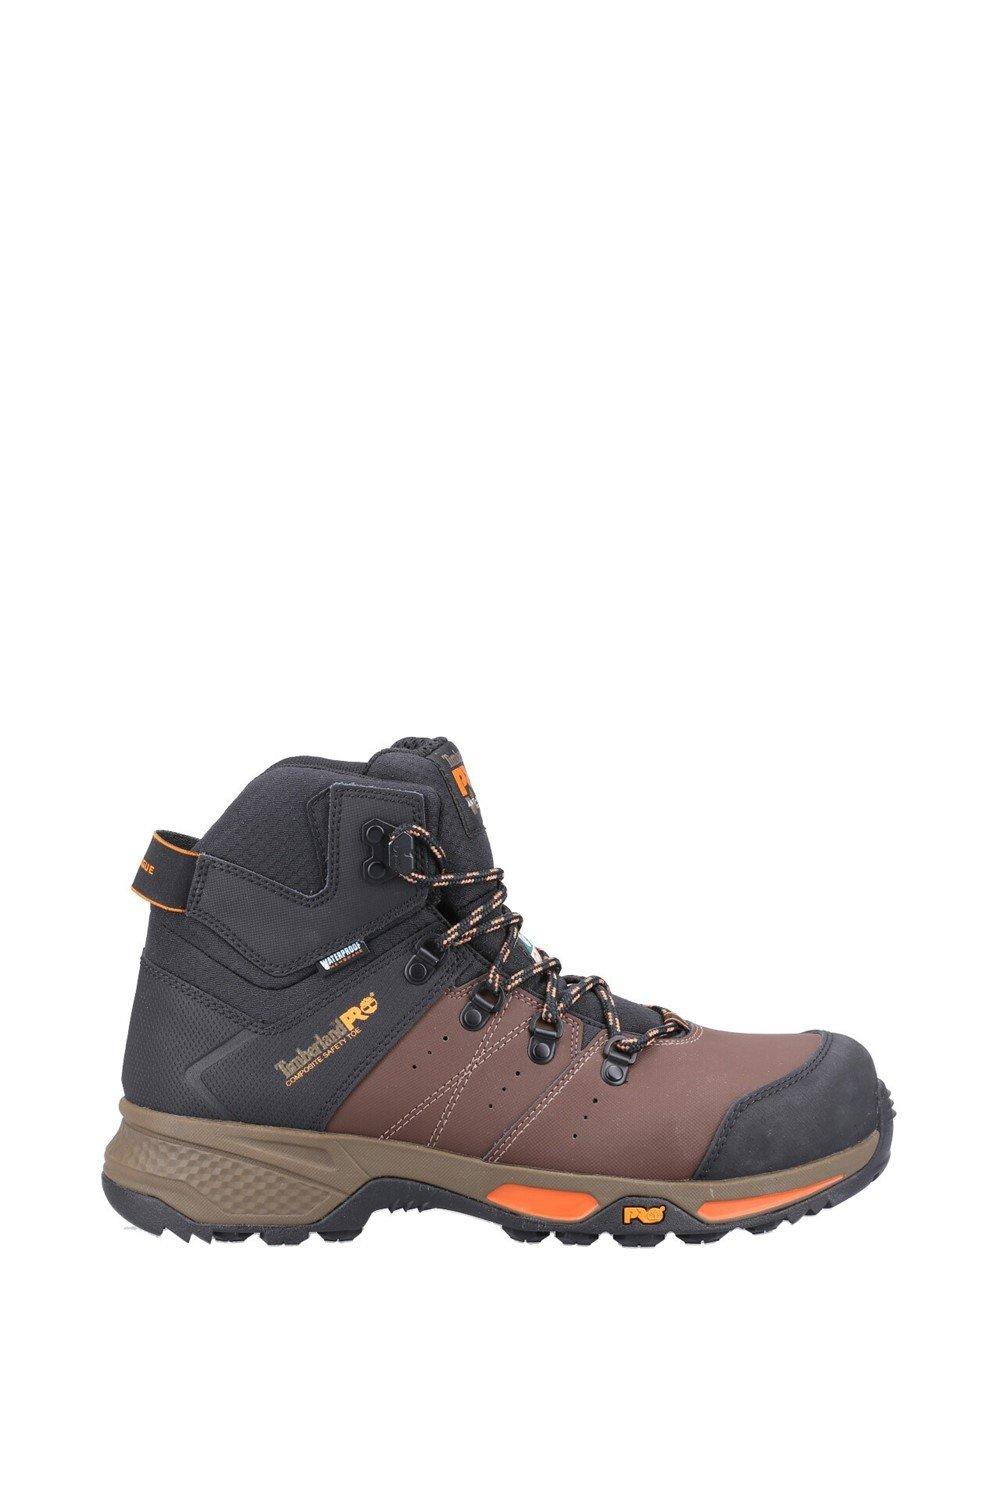 Рабочие ботинки с композитным безопасным носком Switchback Timberland Pro, коричневый